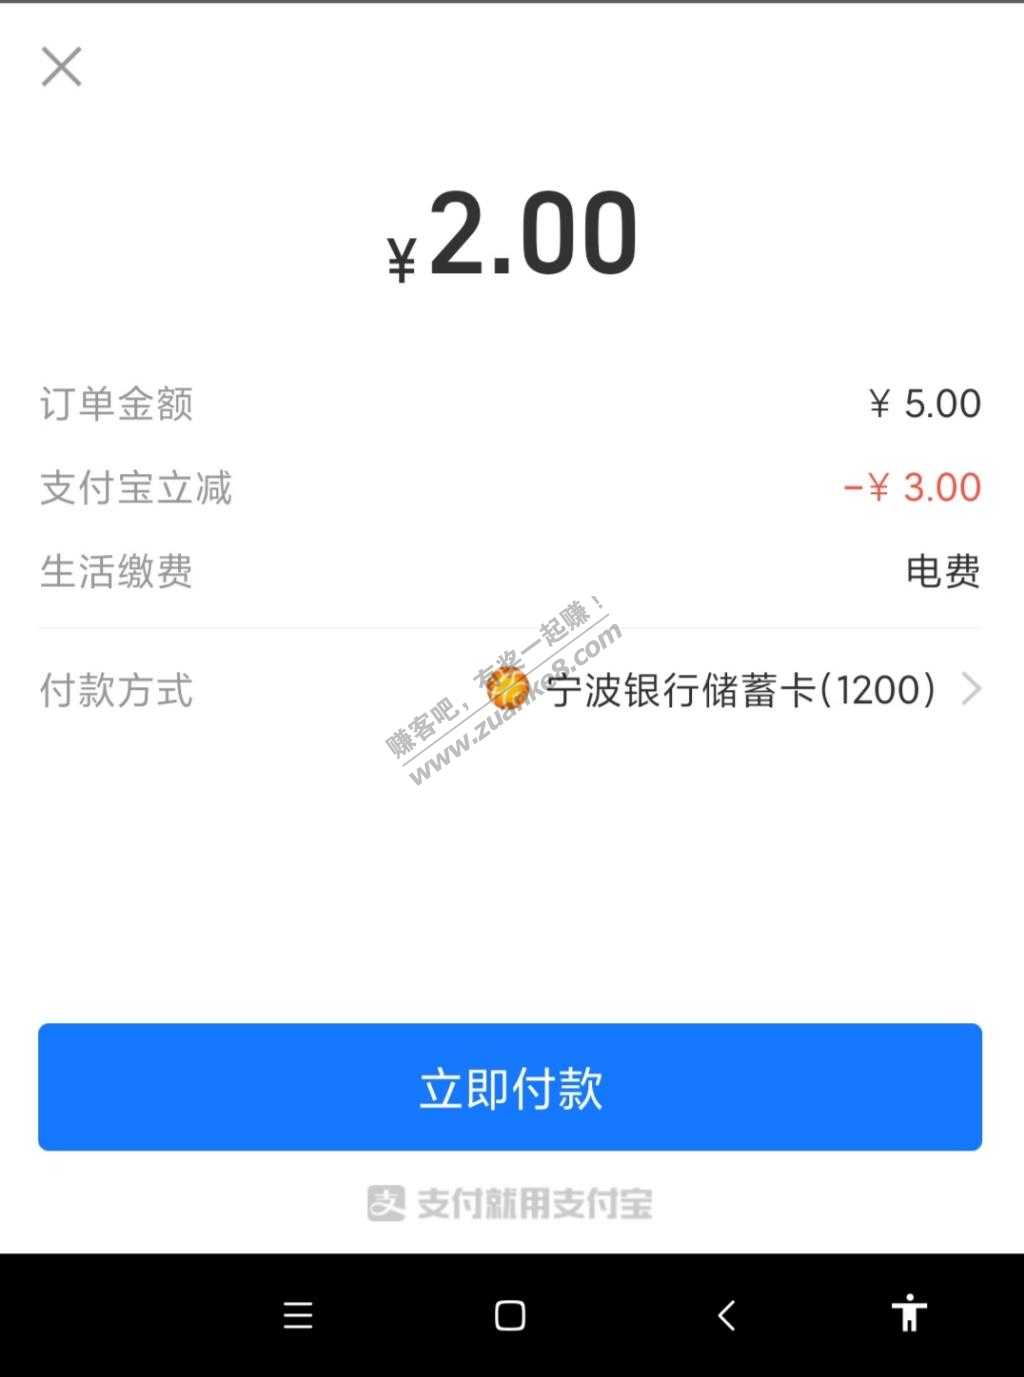 支付鸨宁波银行卡-缴费减3又有了-冲3次9元毛-好用分享-惠小助(52huixz.com)